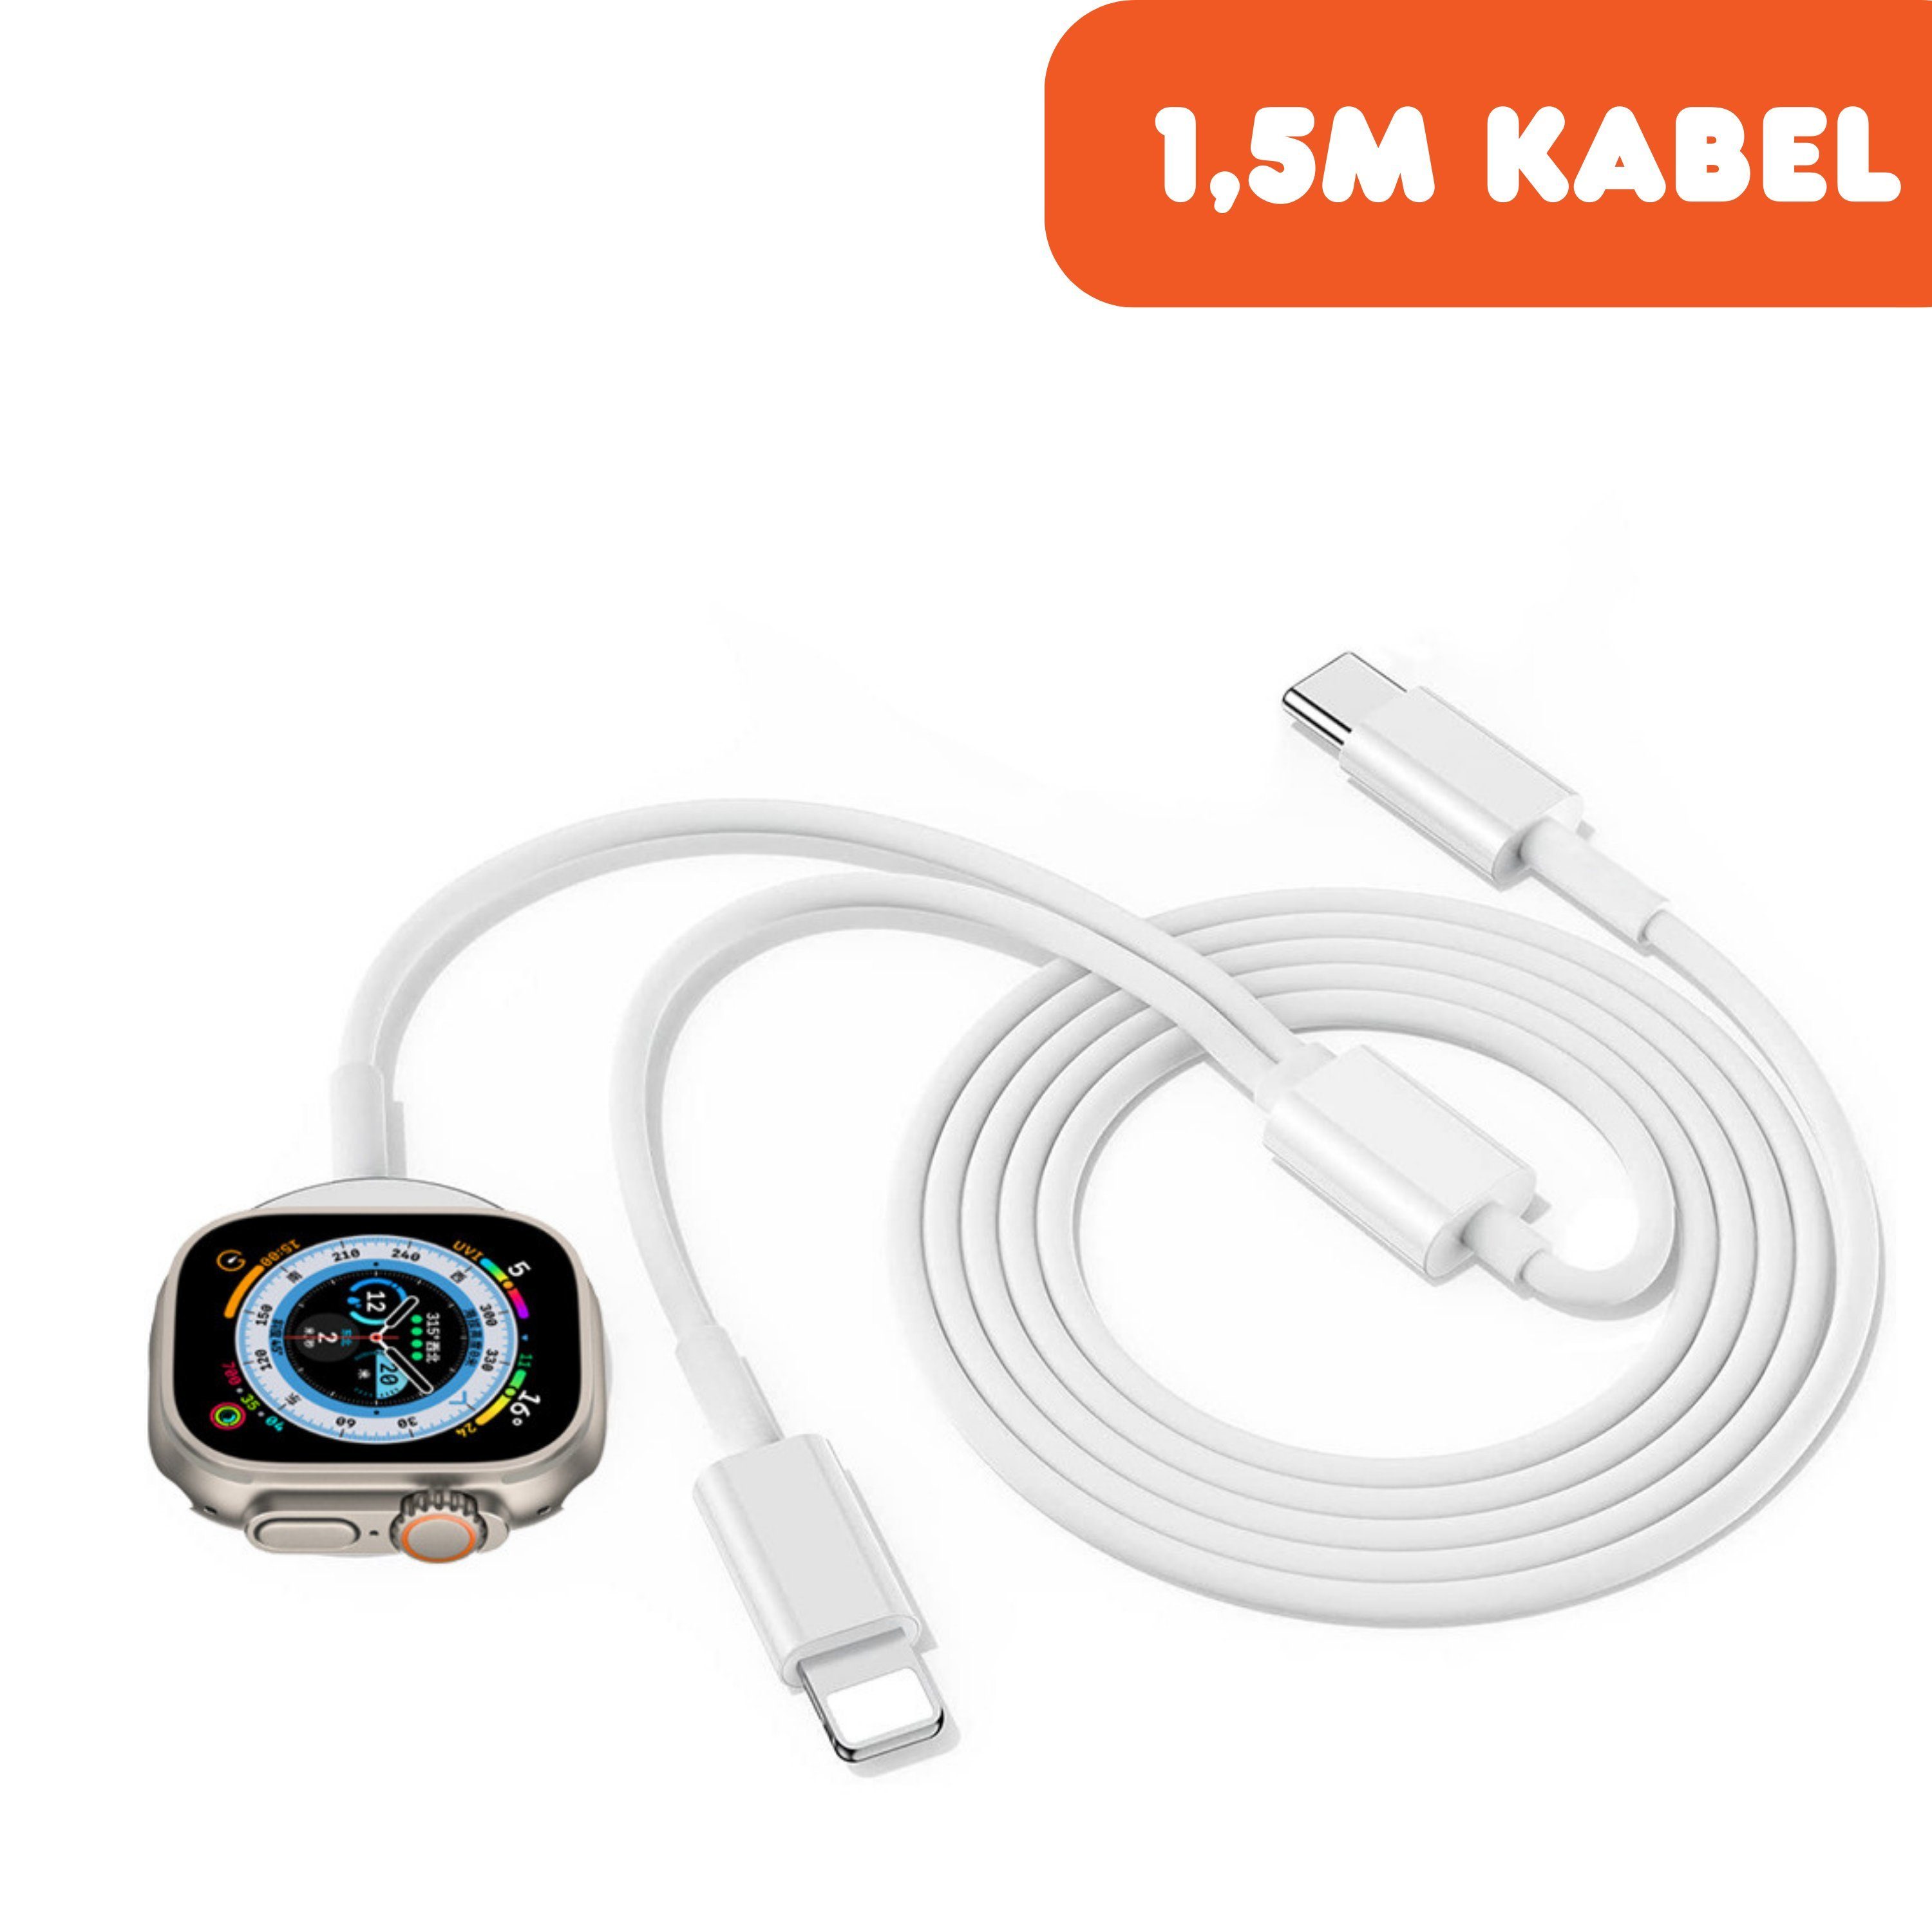 Shopbrothers Ladegerät 2in1 für Apple iPhone Ladekabel Schnellladegerät  1.5M Watch Schnelllade-Gerät